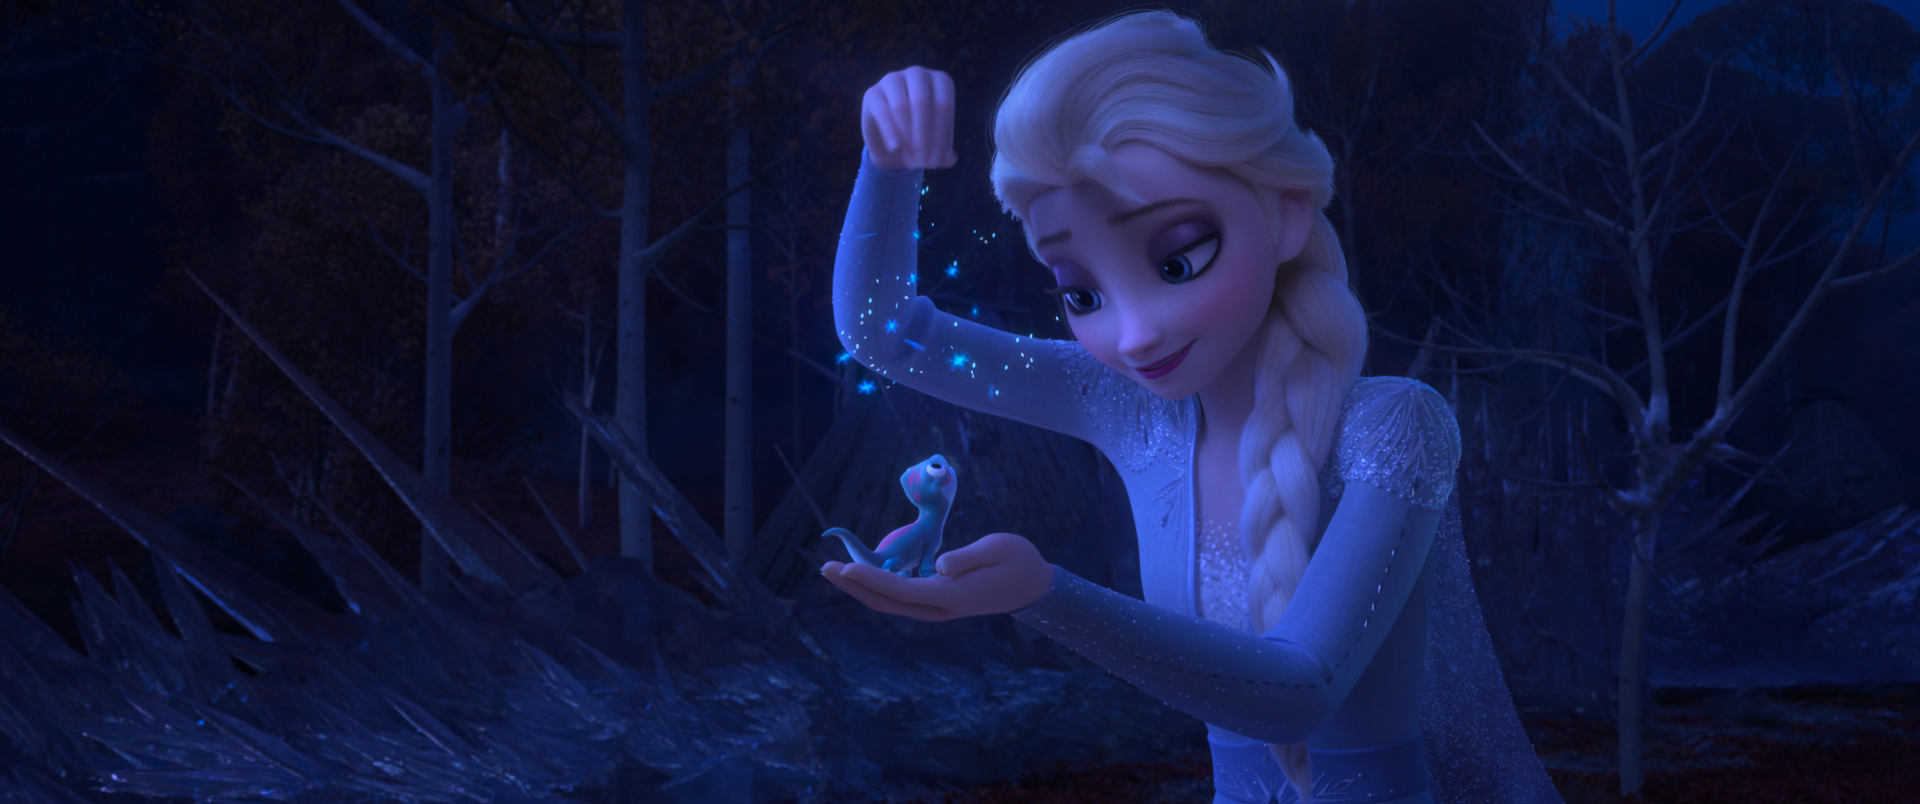 Frozen II Trailer 2 Questions Elsa’s Magical Origins